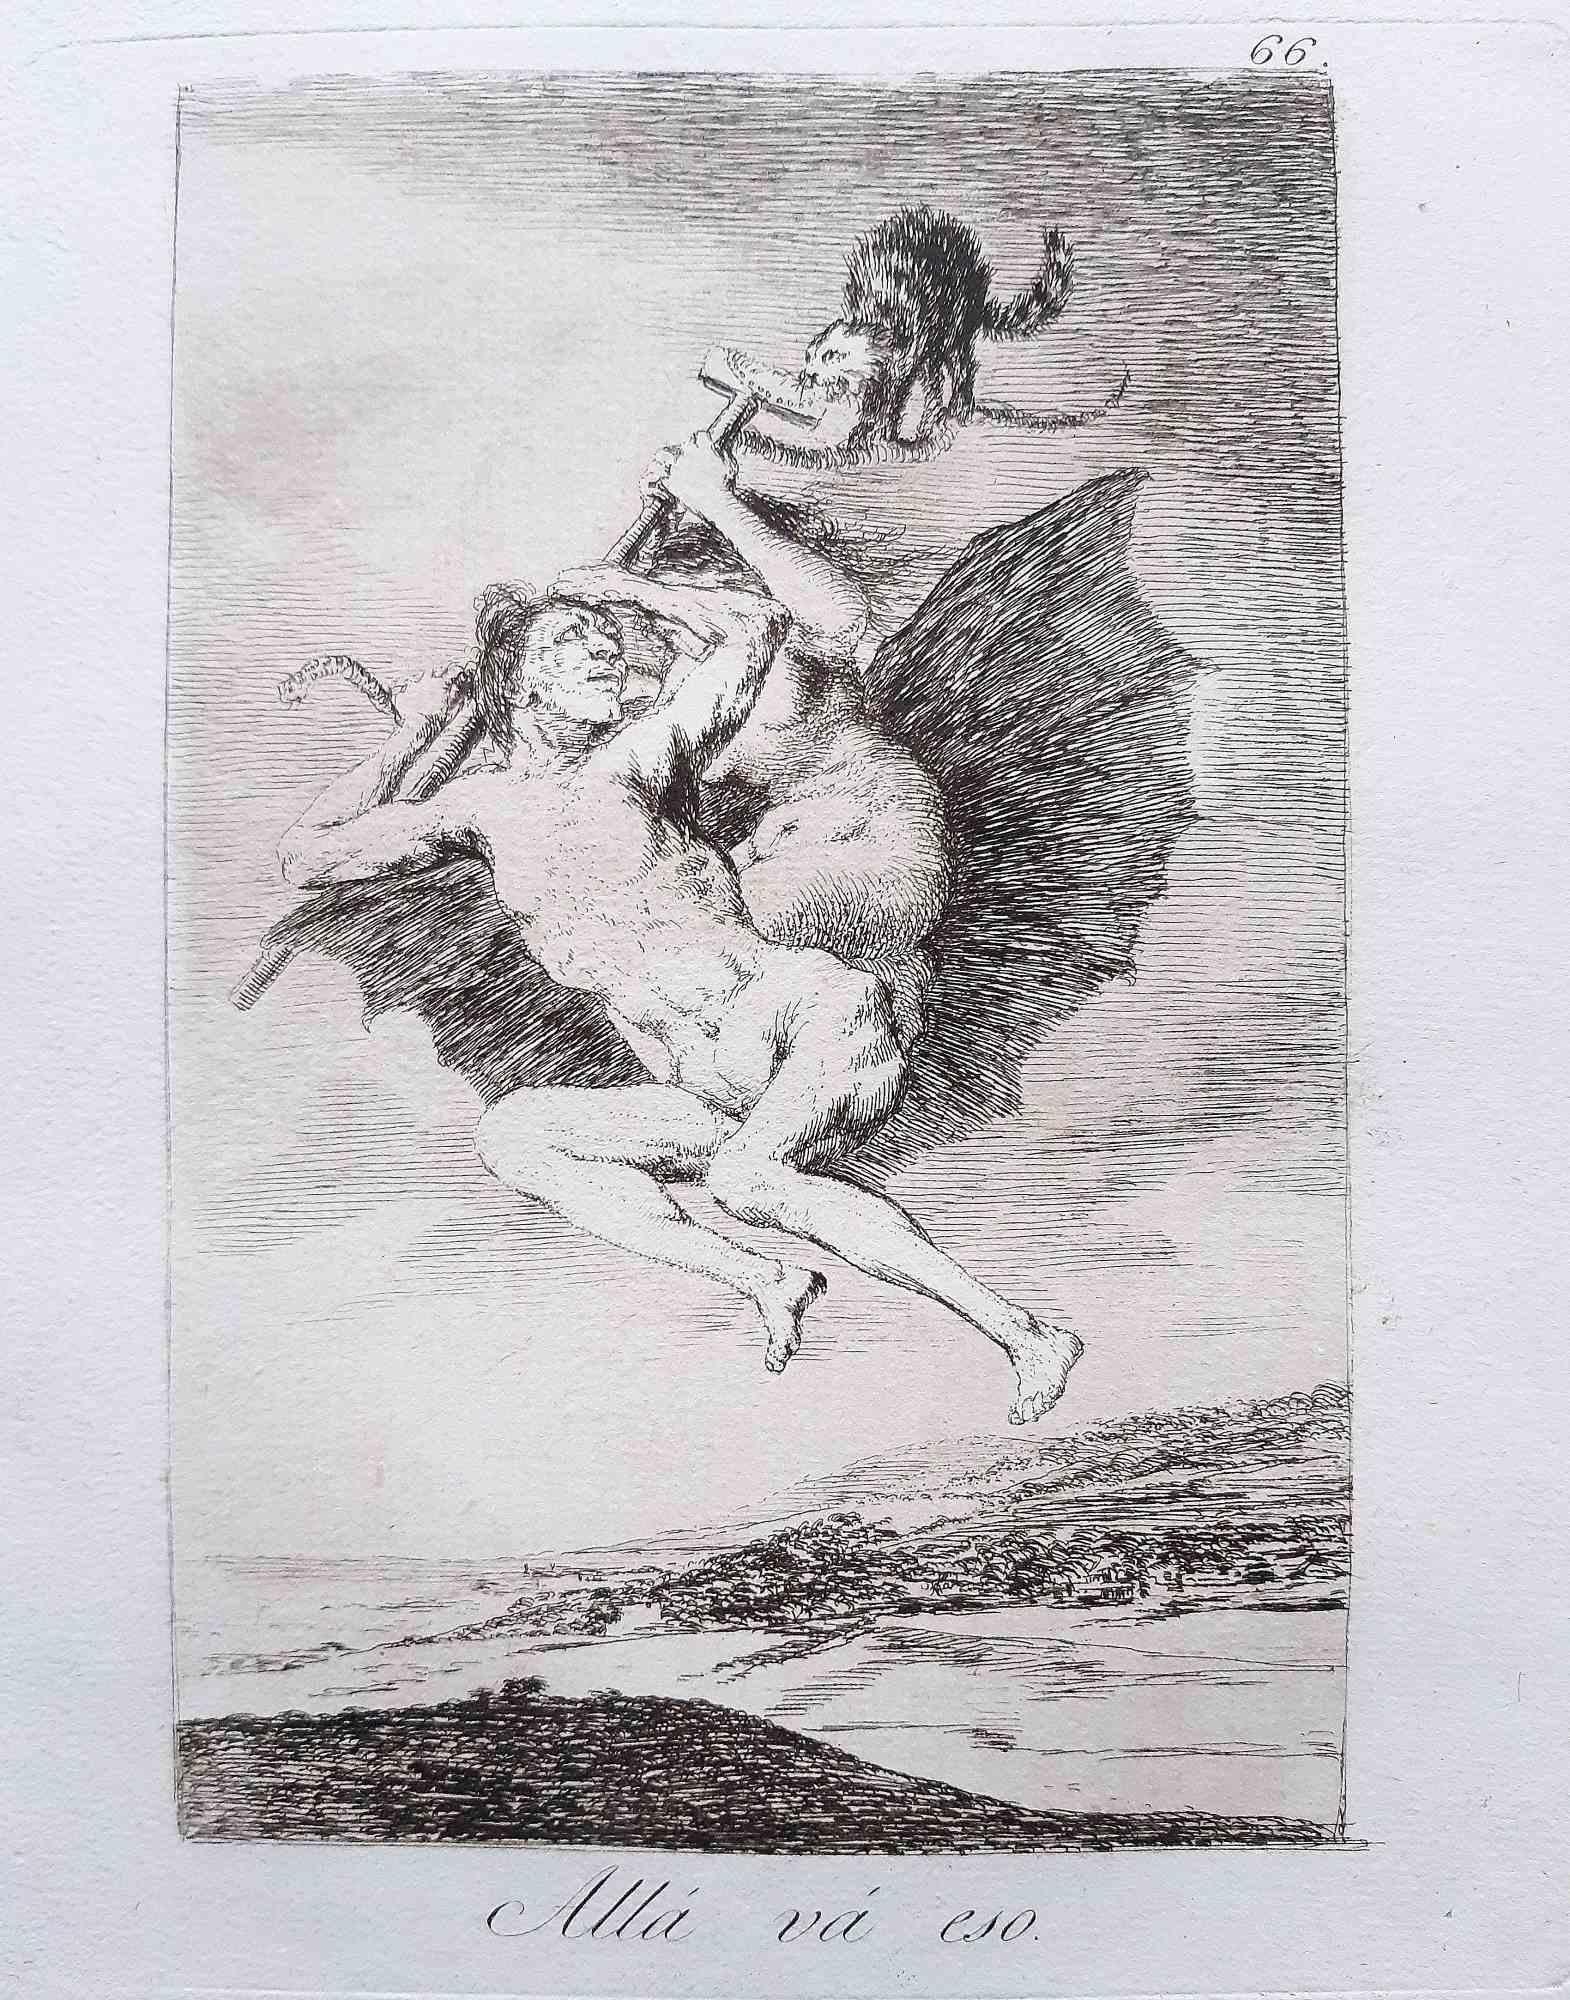 Allà Và Eso de Los Caprichos - Gravure de Francisco Goya - 1799